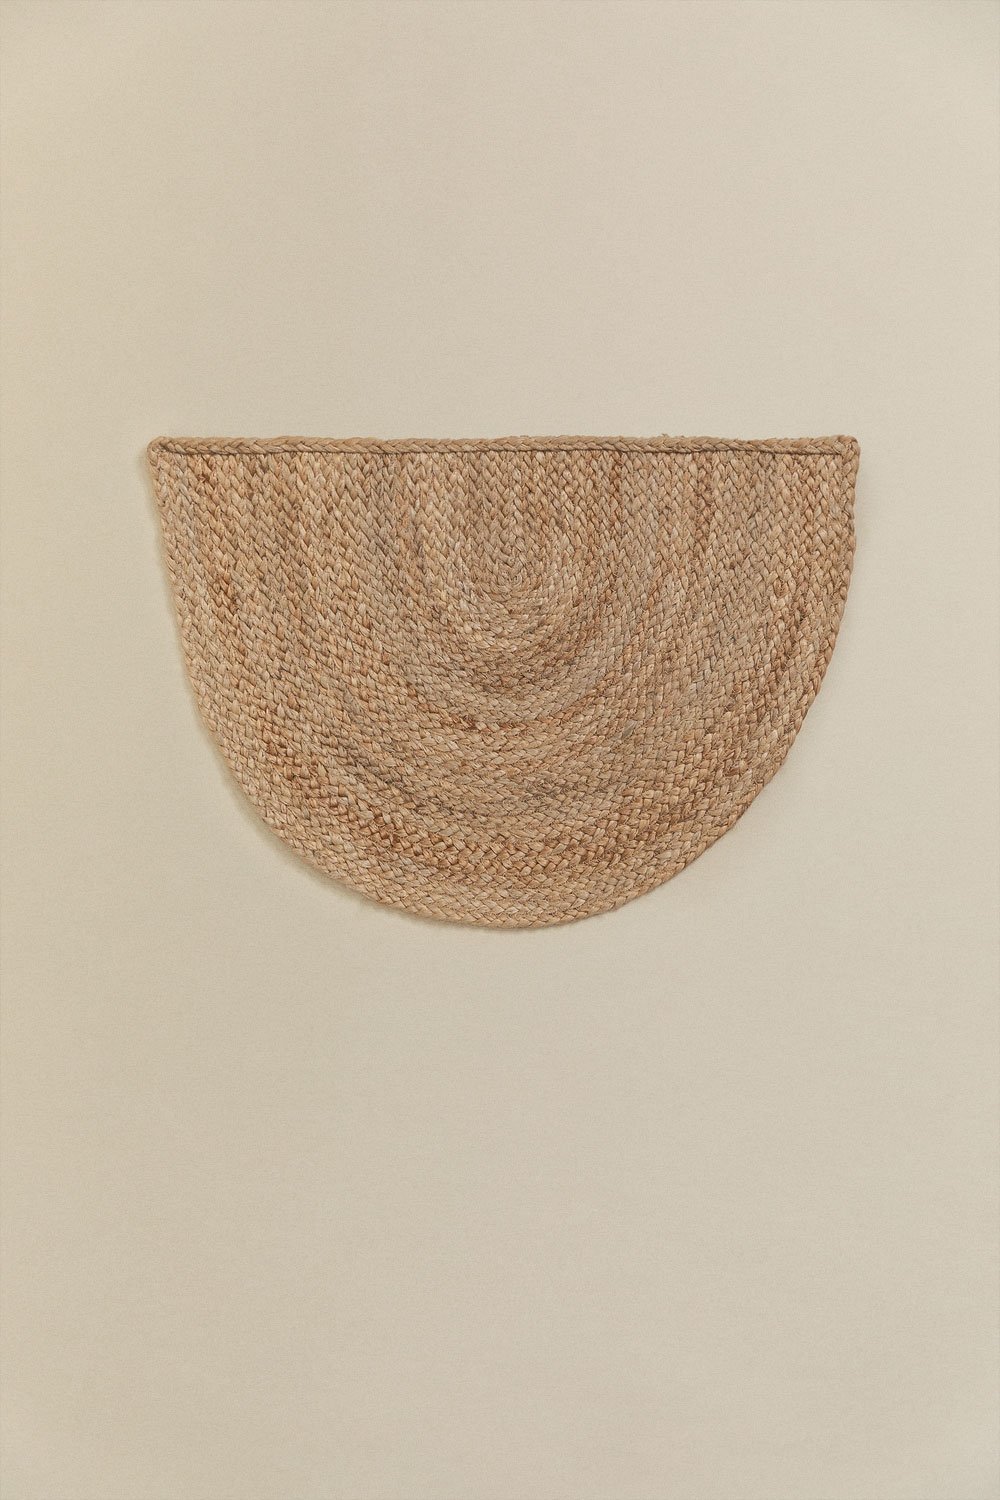 Paillasson semi-circulaire en jute (62x40 cm) Fondreset, image de la galerie 1